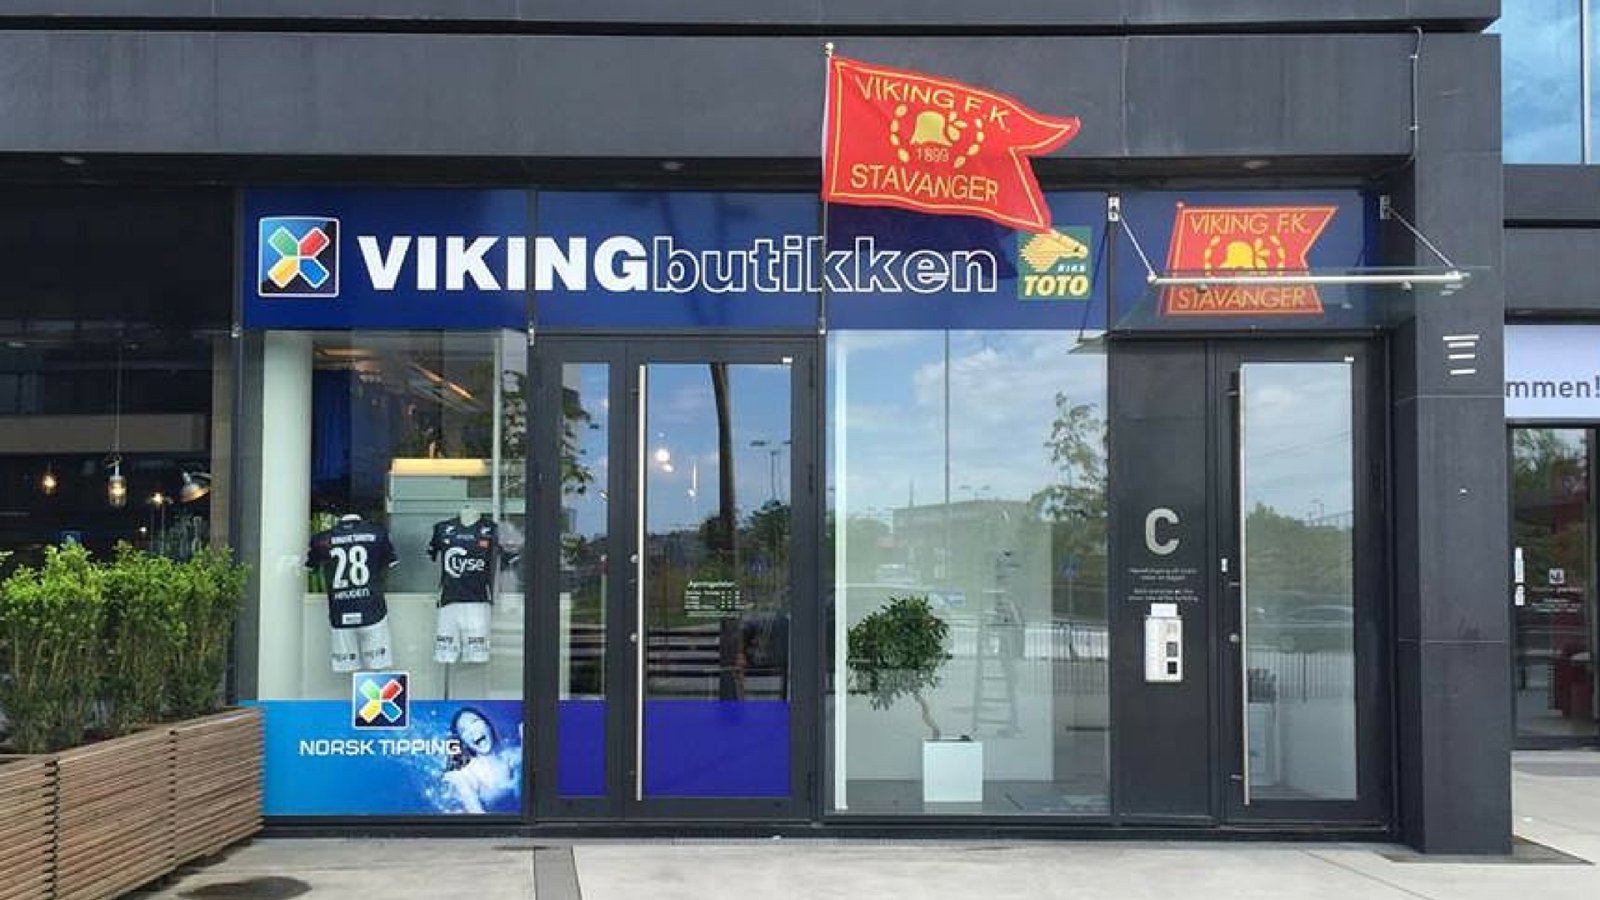 Vikingbutikken